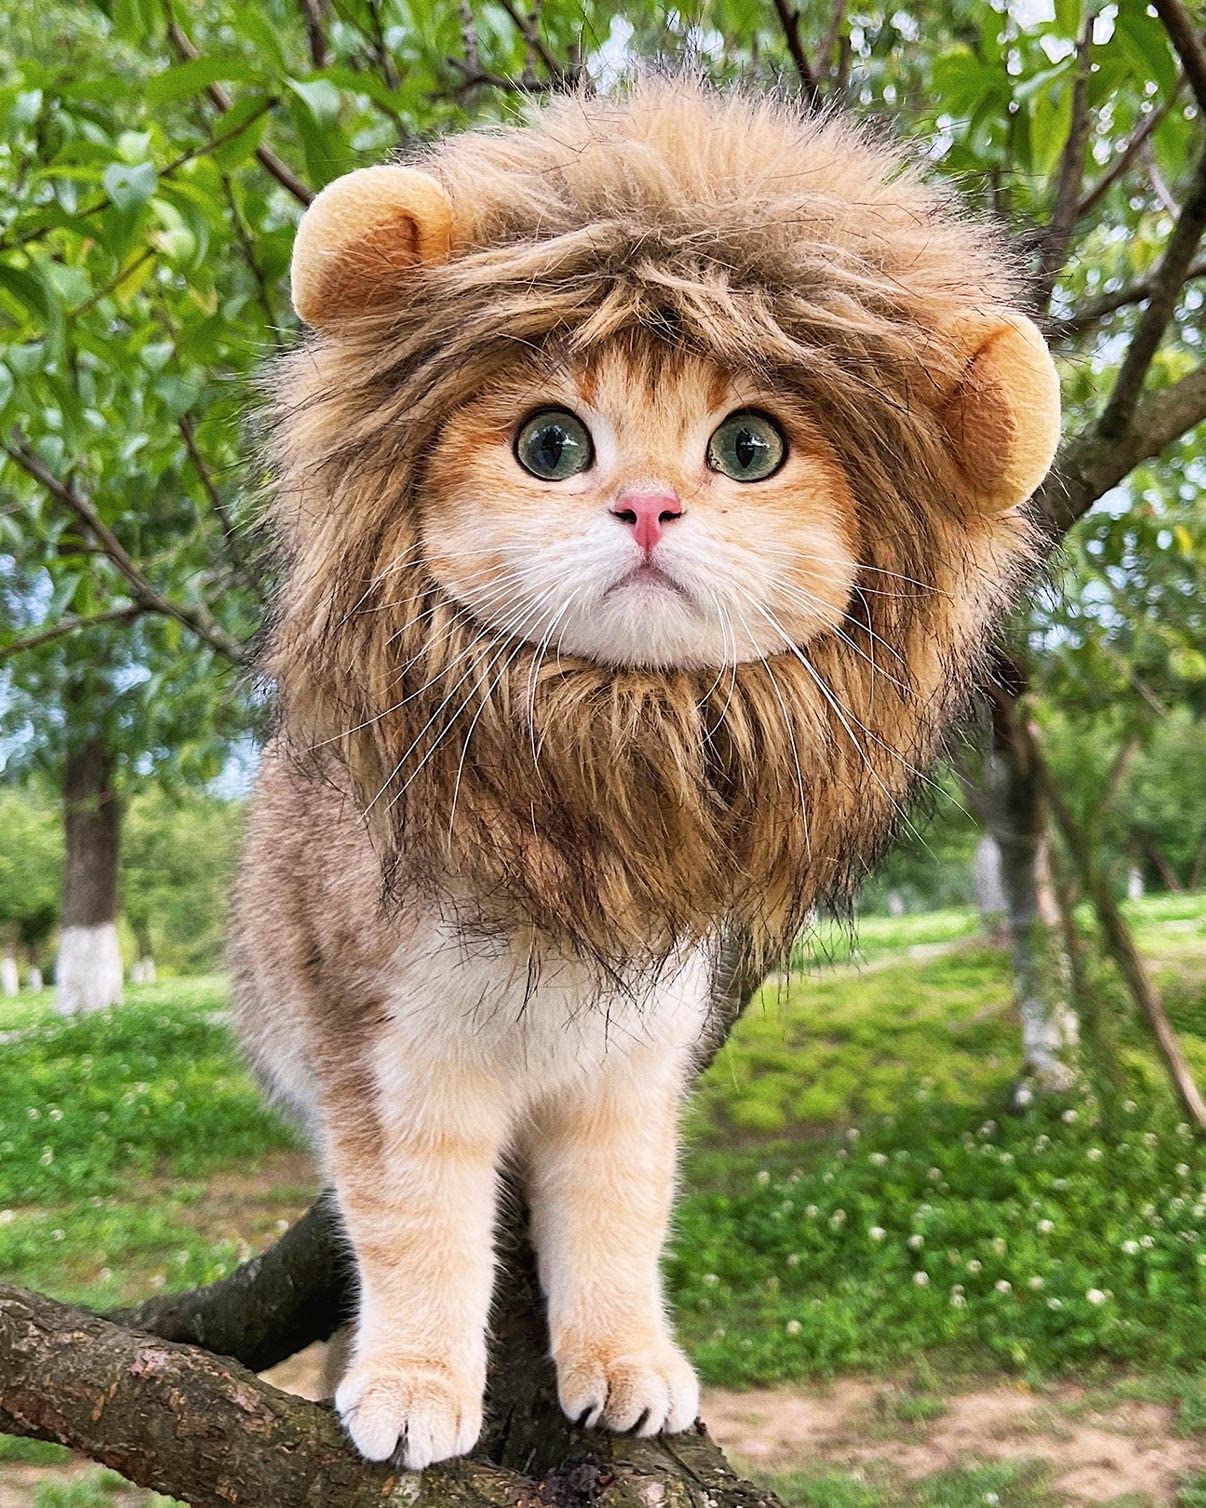 pet cat costume